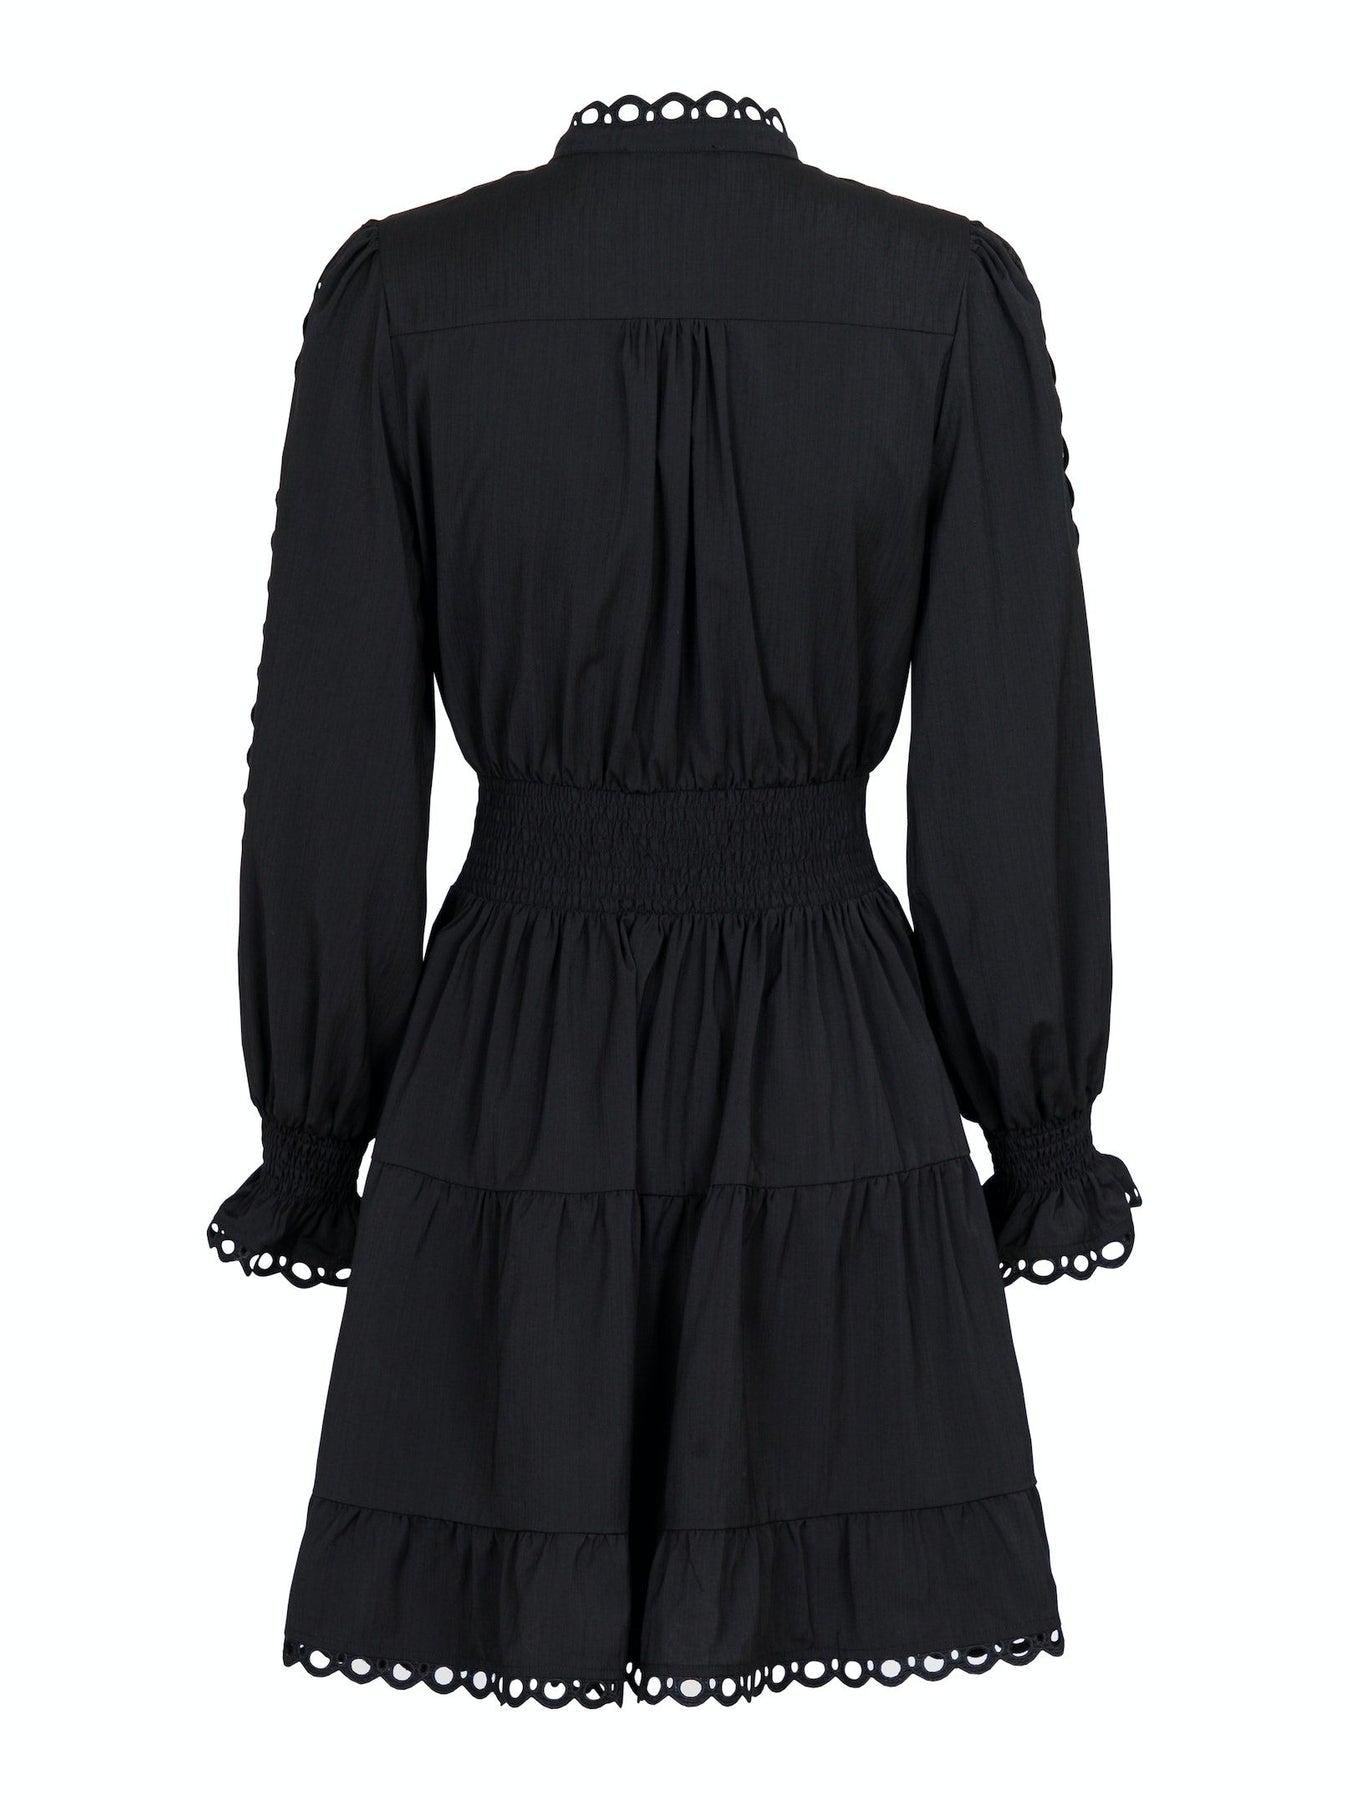 Sandringham Dress - Black